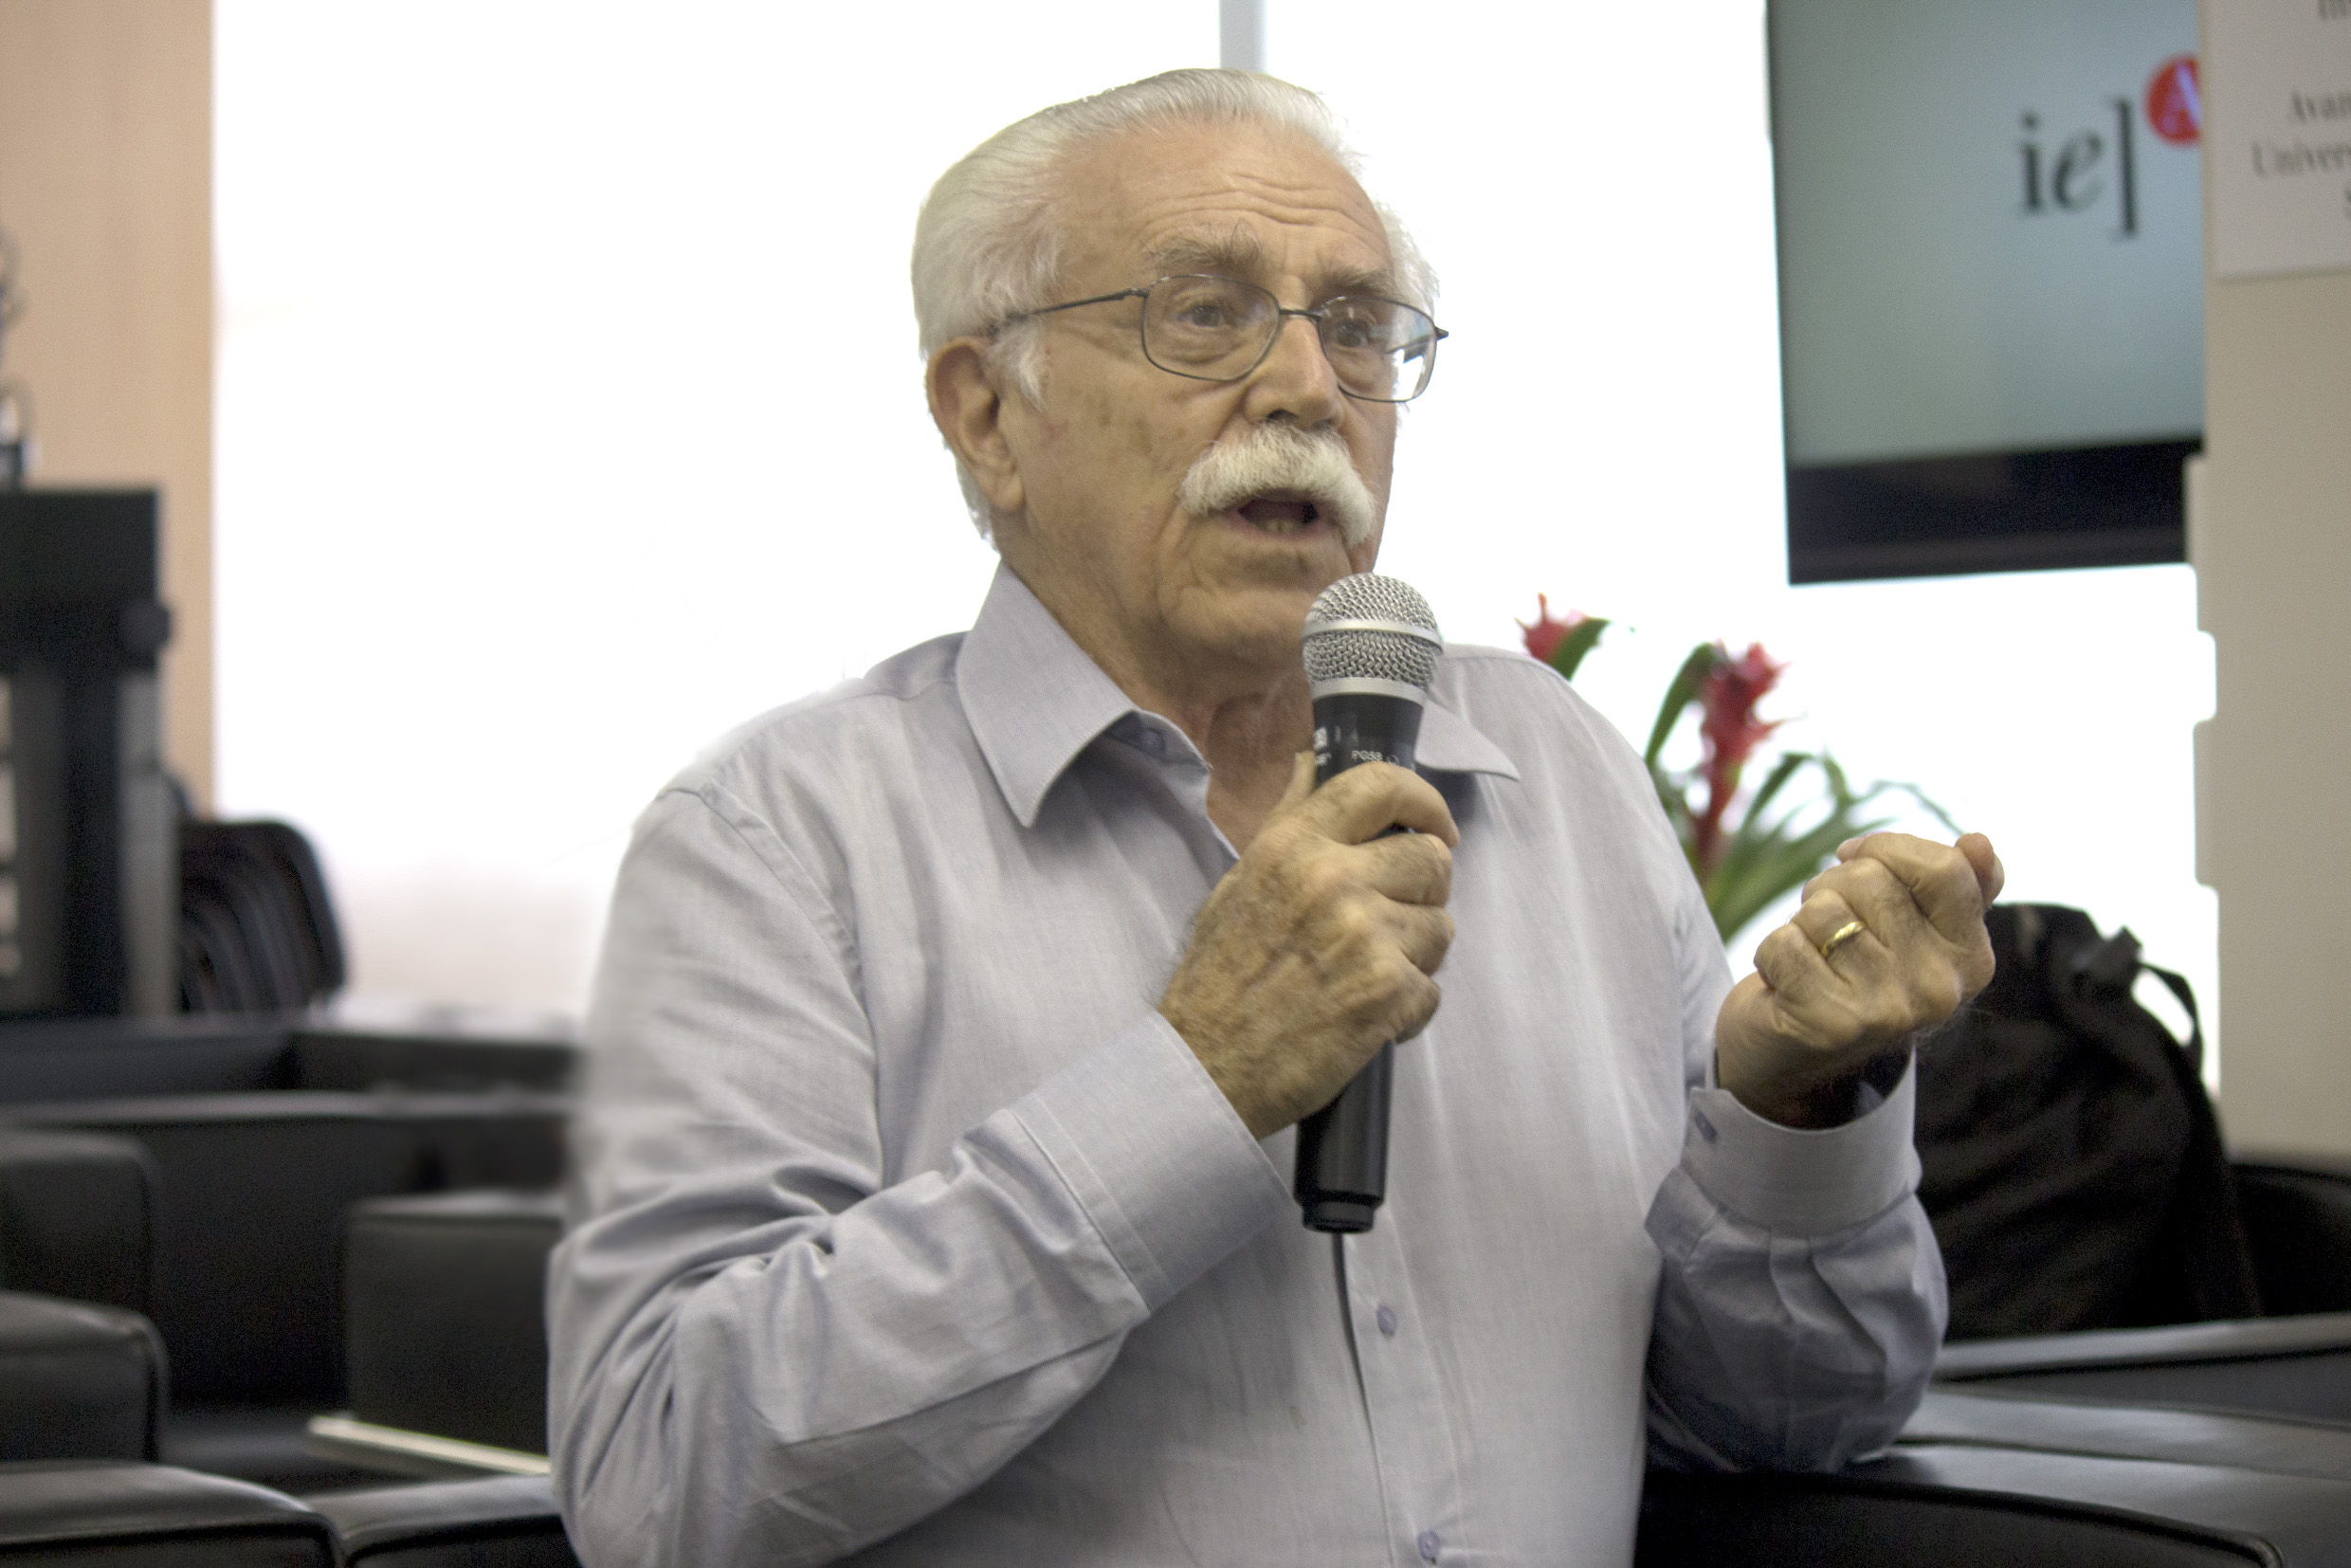 Carlos Alberto Barbosa Dantas faz perguntas durante a exposição